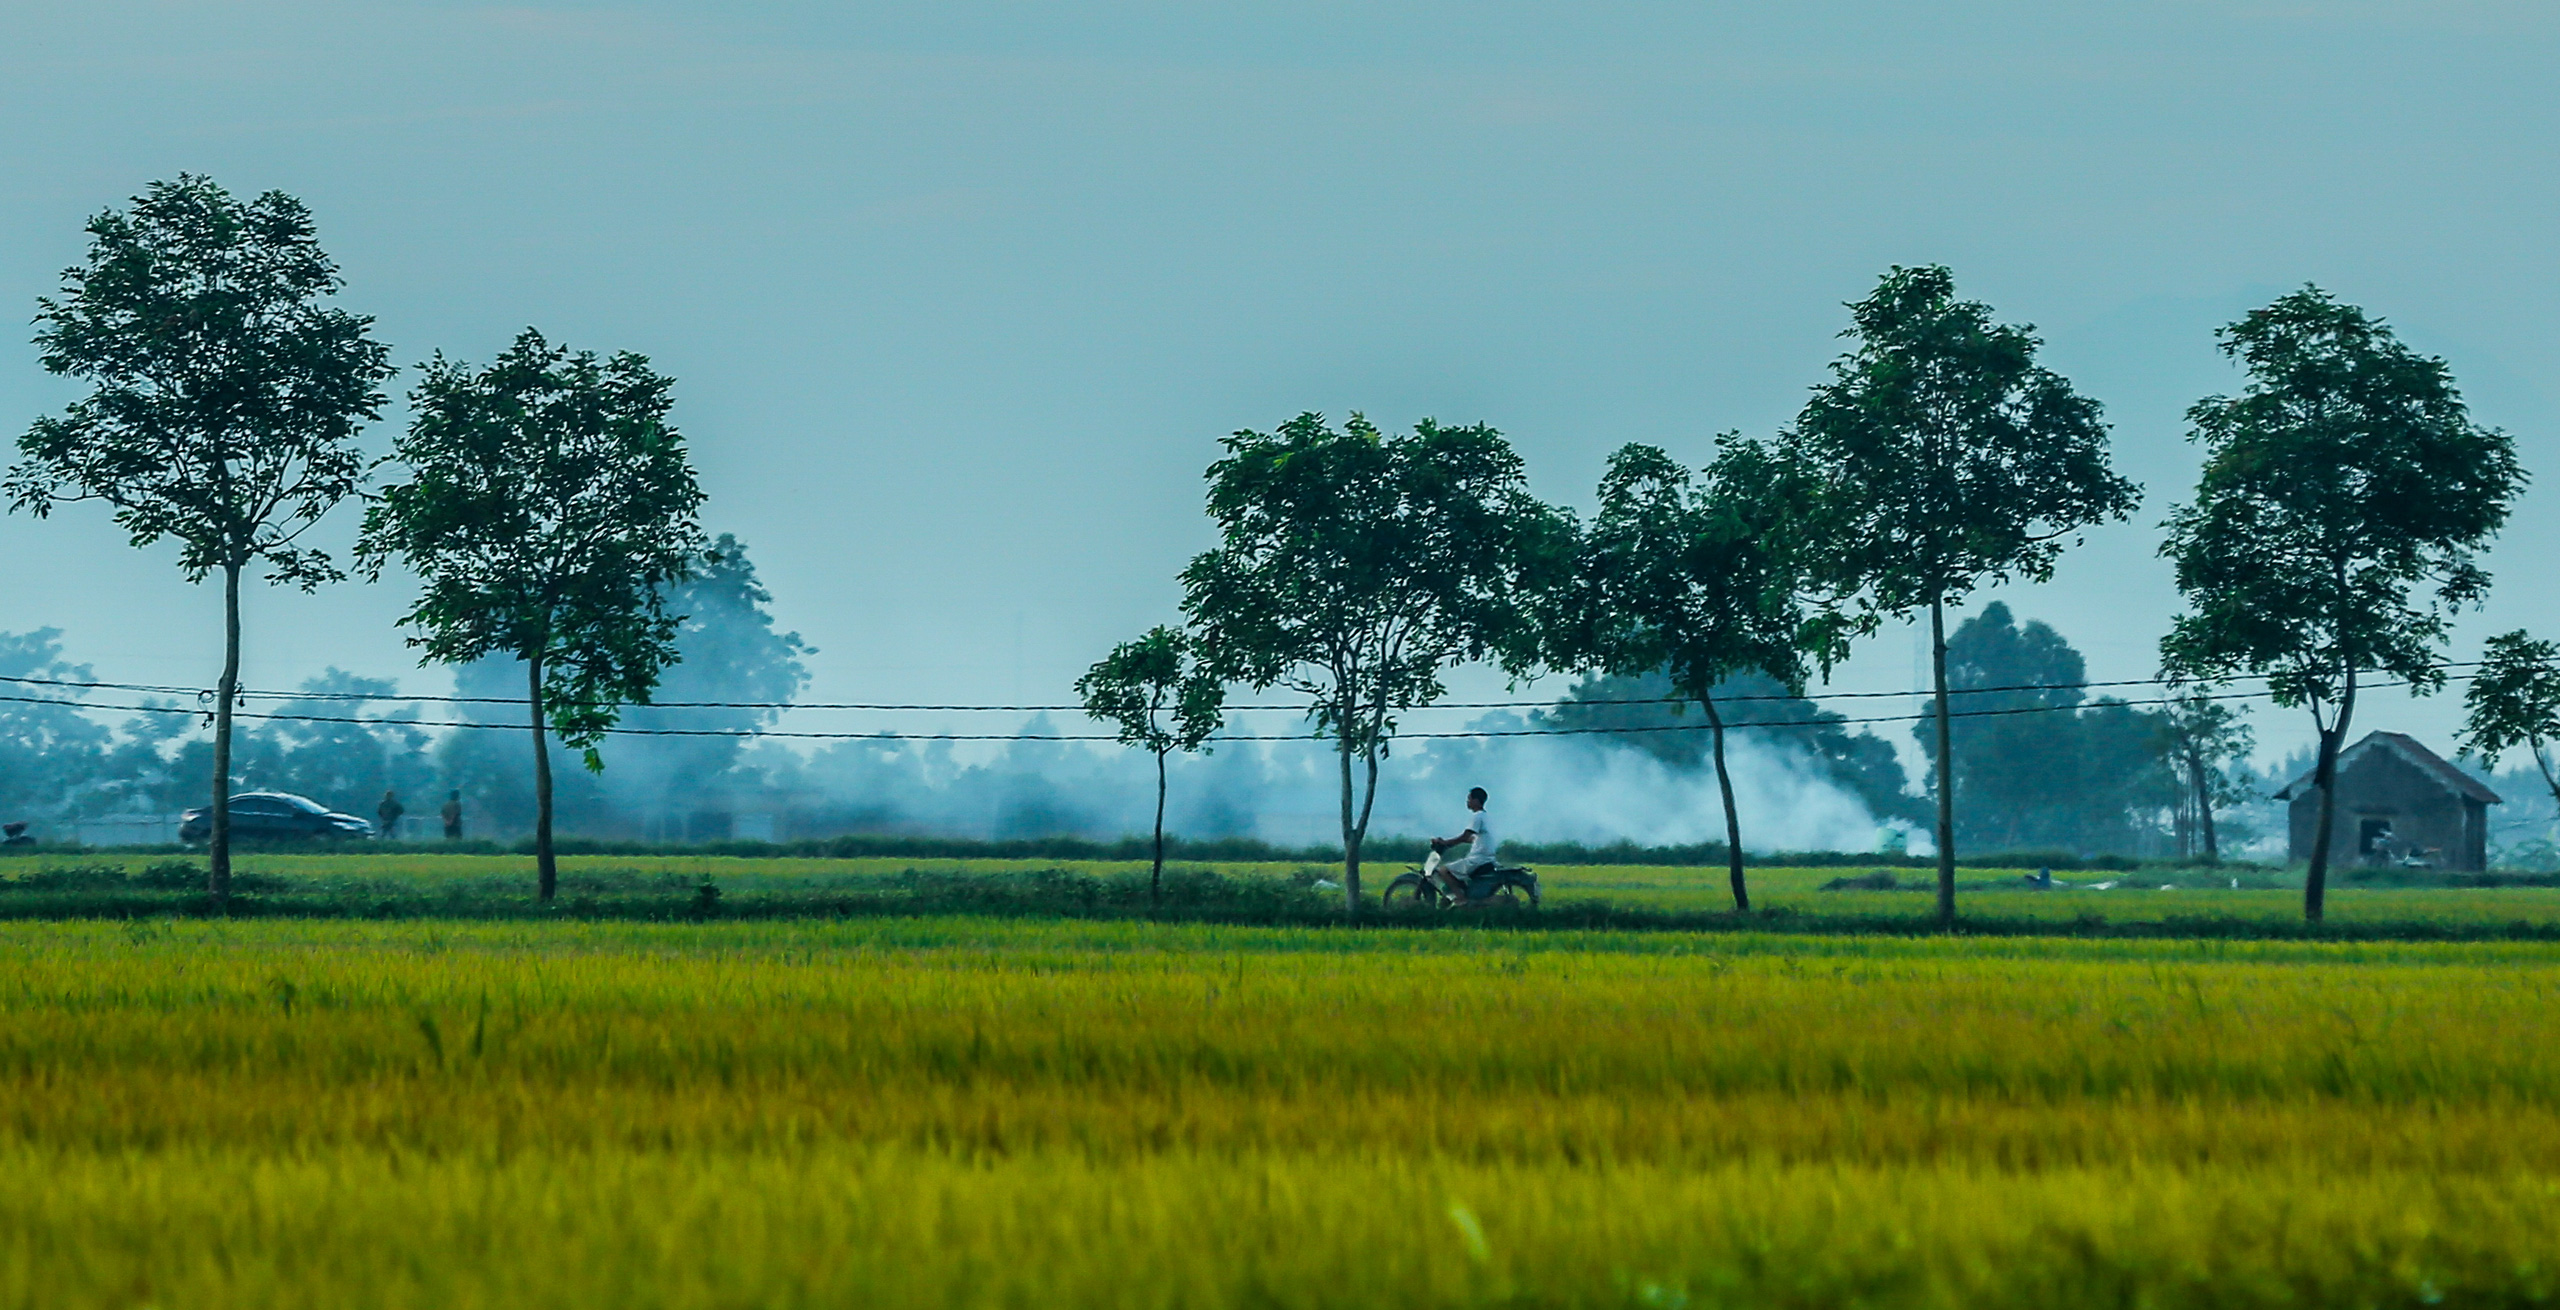 Chiêm ngưỡng những cánh đồng lúa chín đẹp nhất Việt Nam